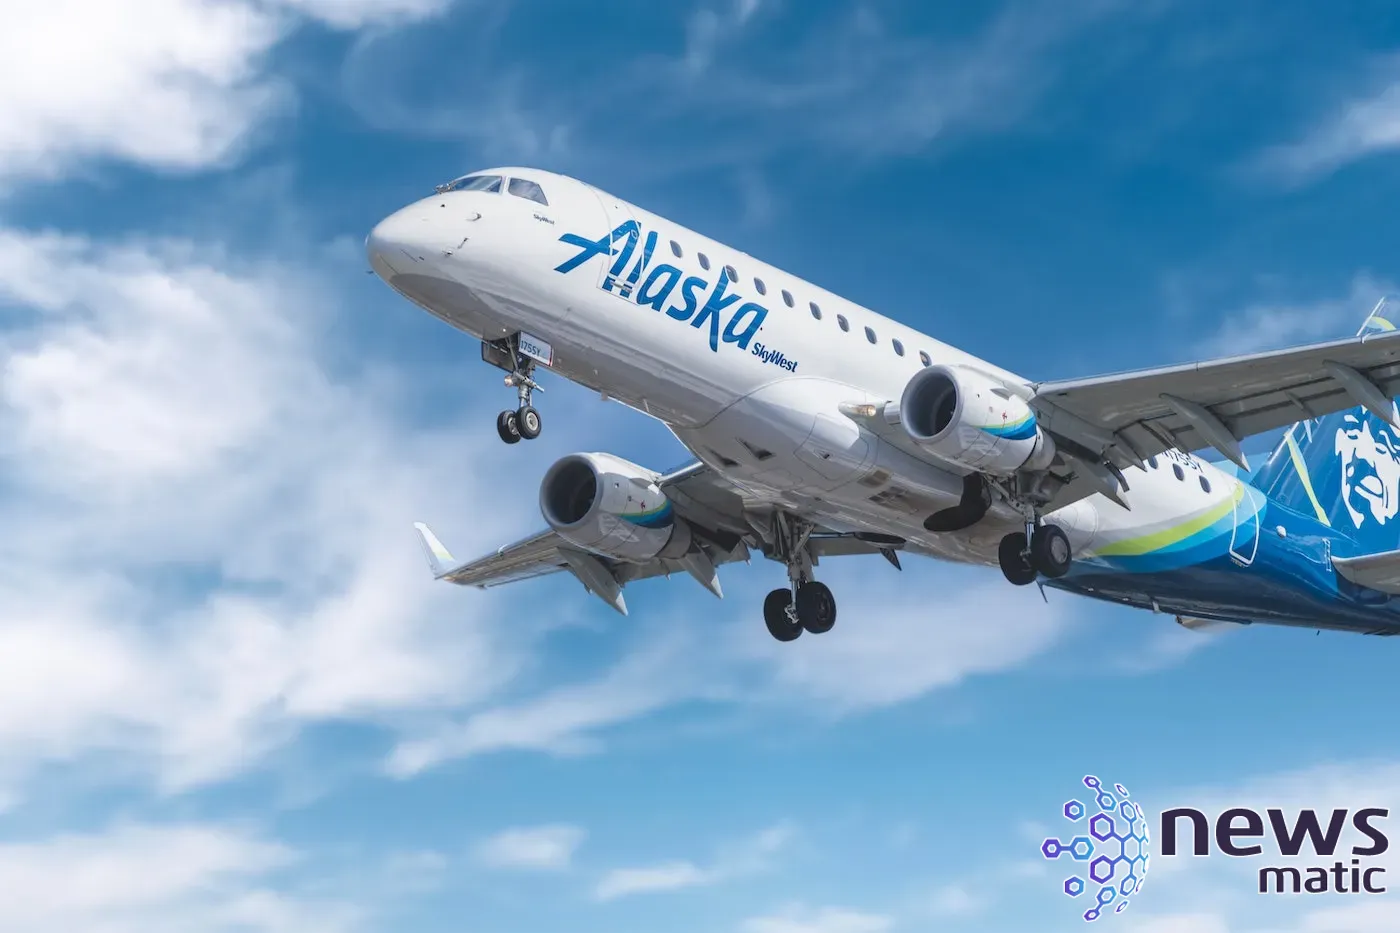 Alaska Airlines revoluciona la experiencia de vuelo con análisis en tiempo real y colaboración de datos - Big Data | Imagen 1 Newsmatic